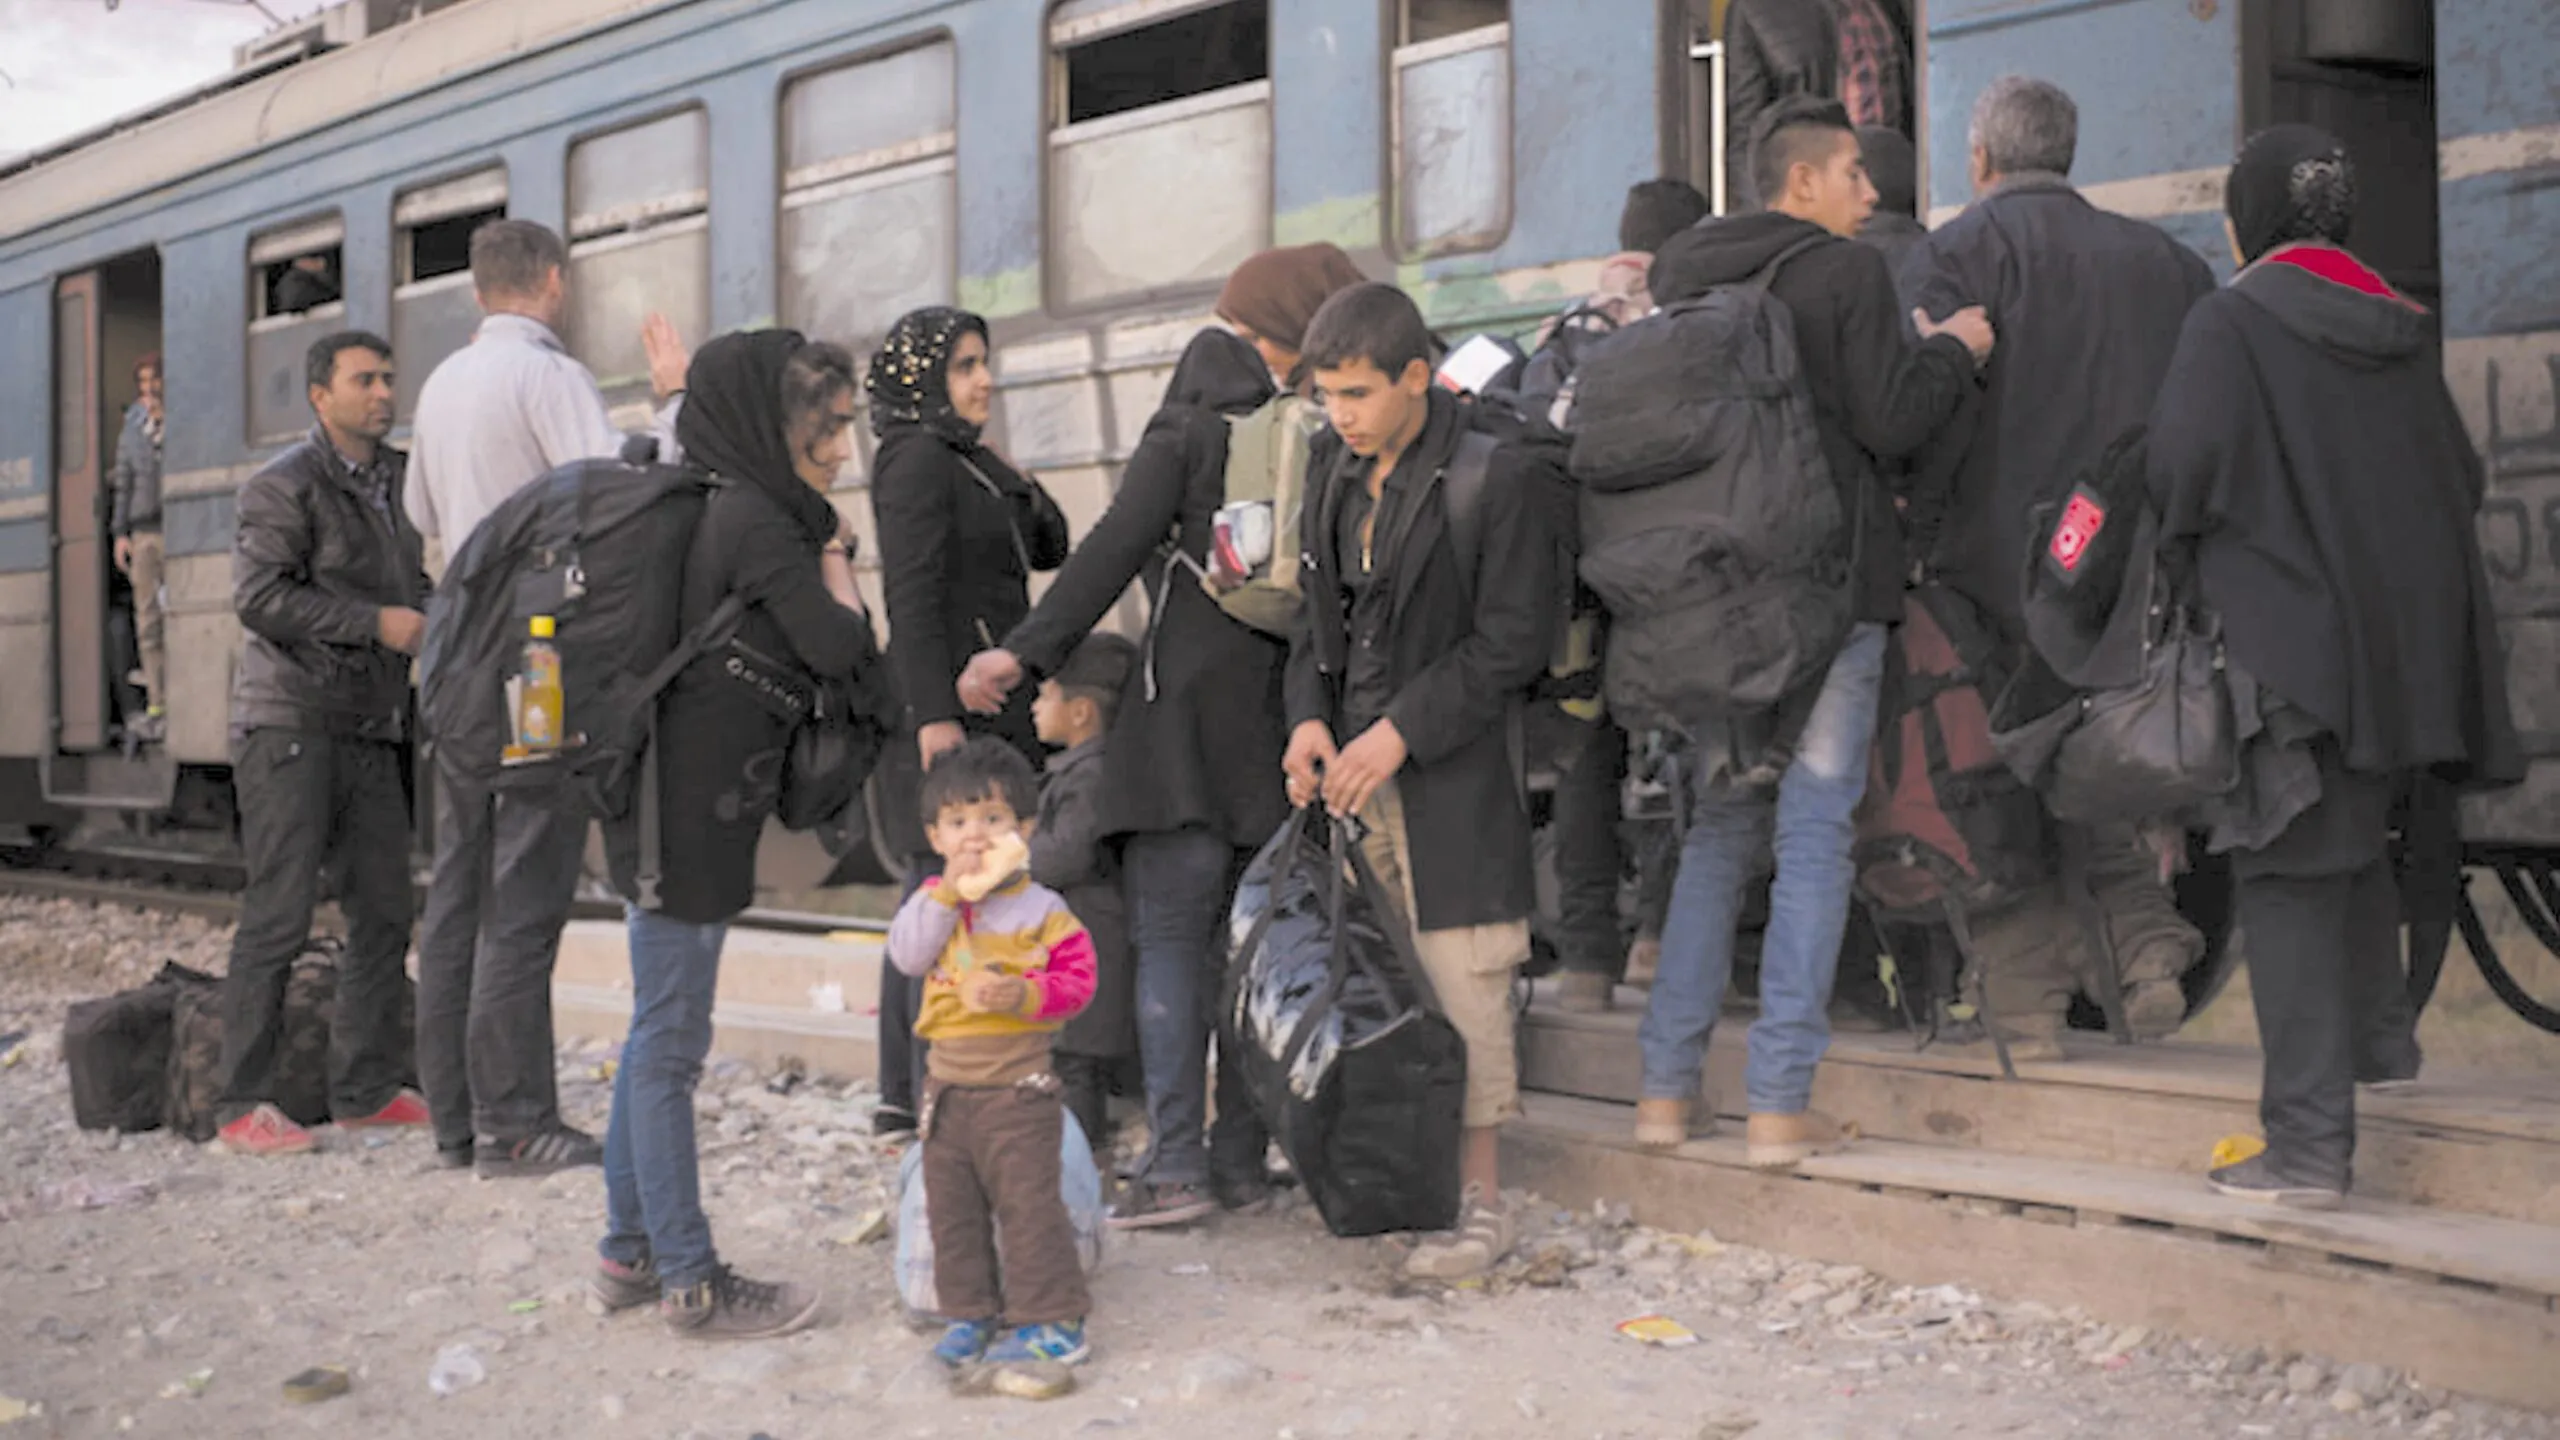 Romscy uchodźcy źle traktowani